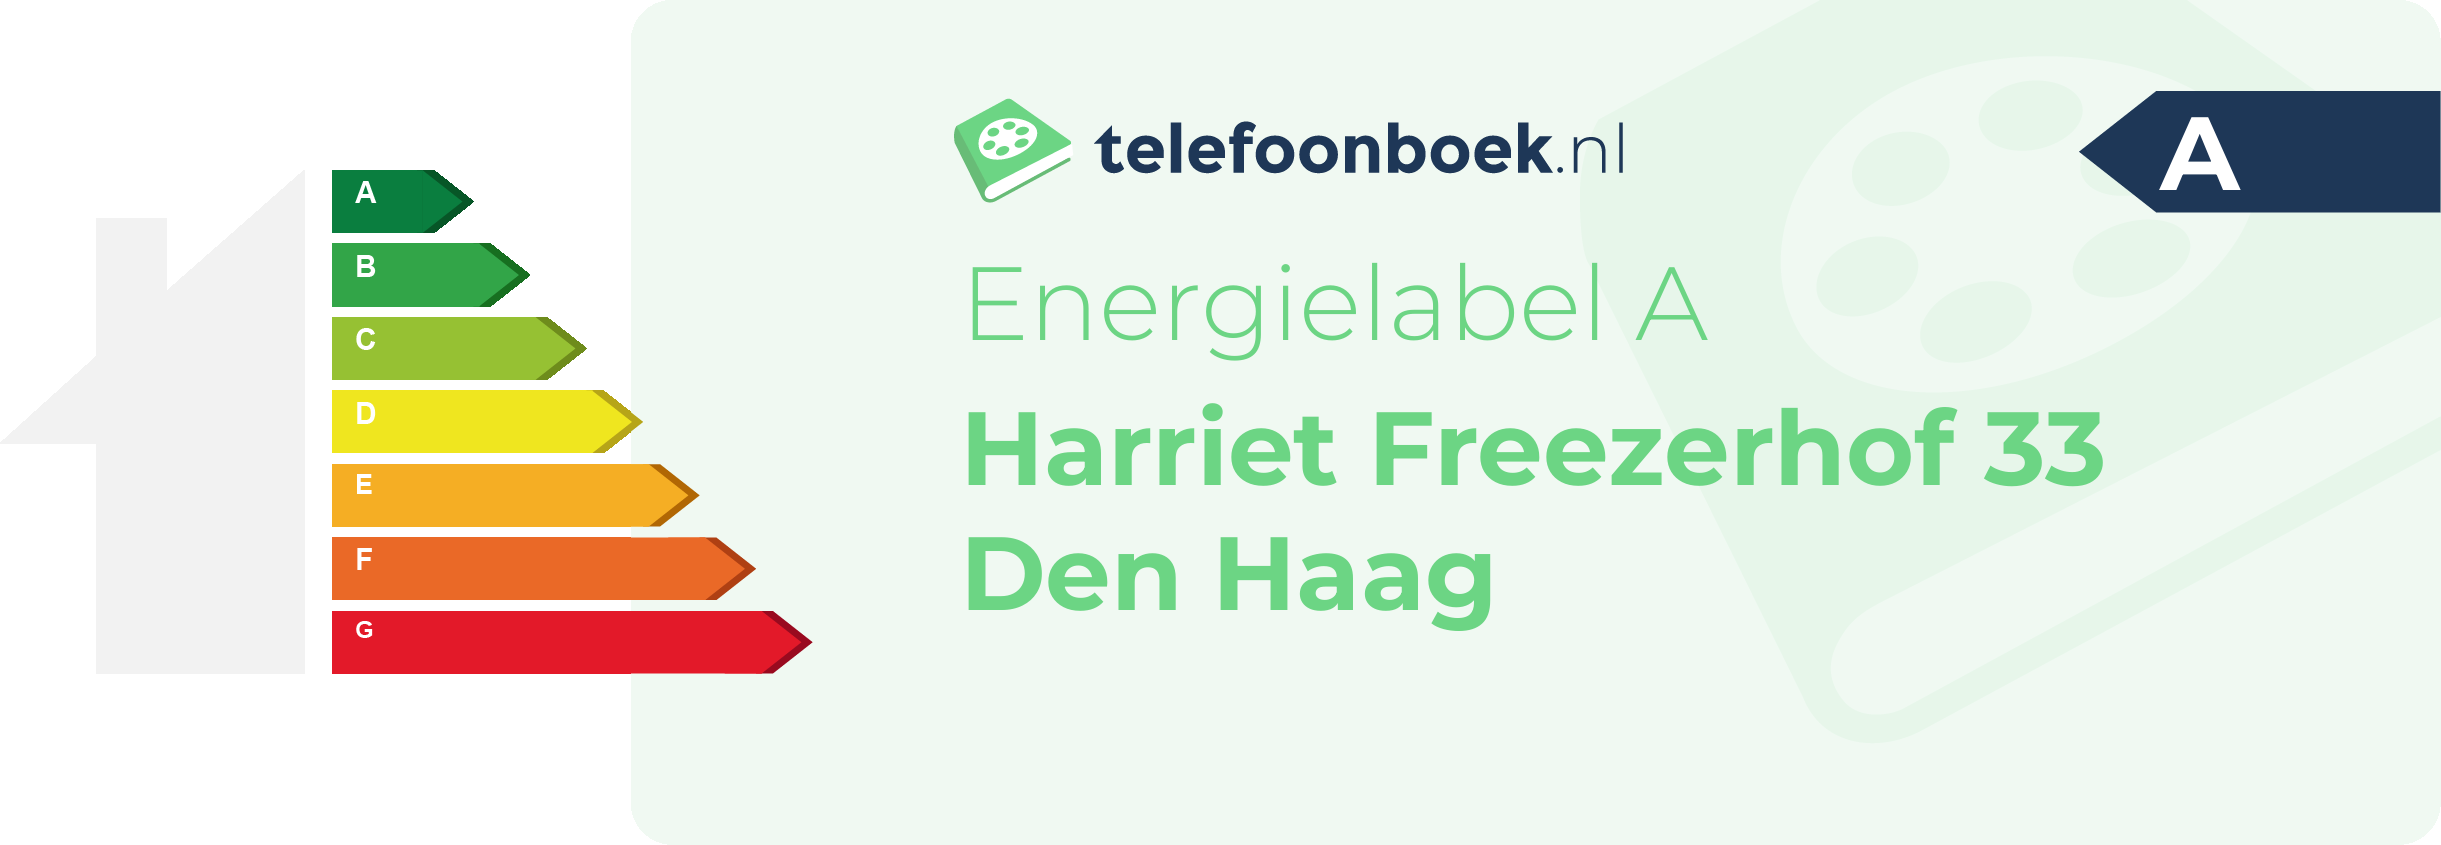 Energielabel Harriet Freezerhof 33 Den Haag